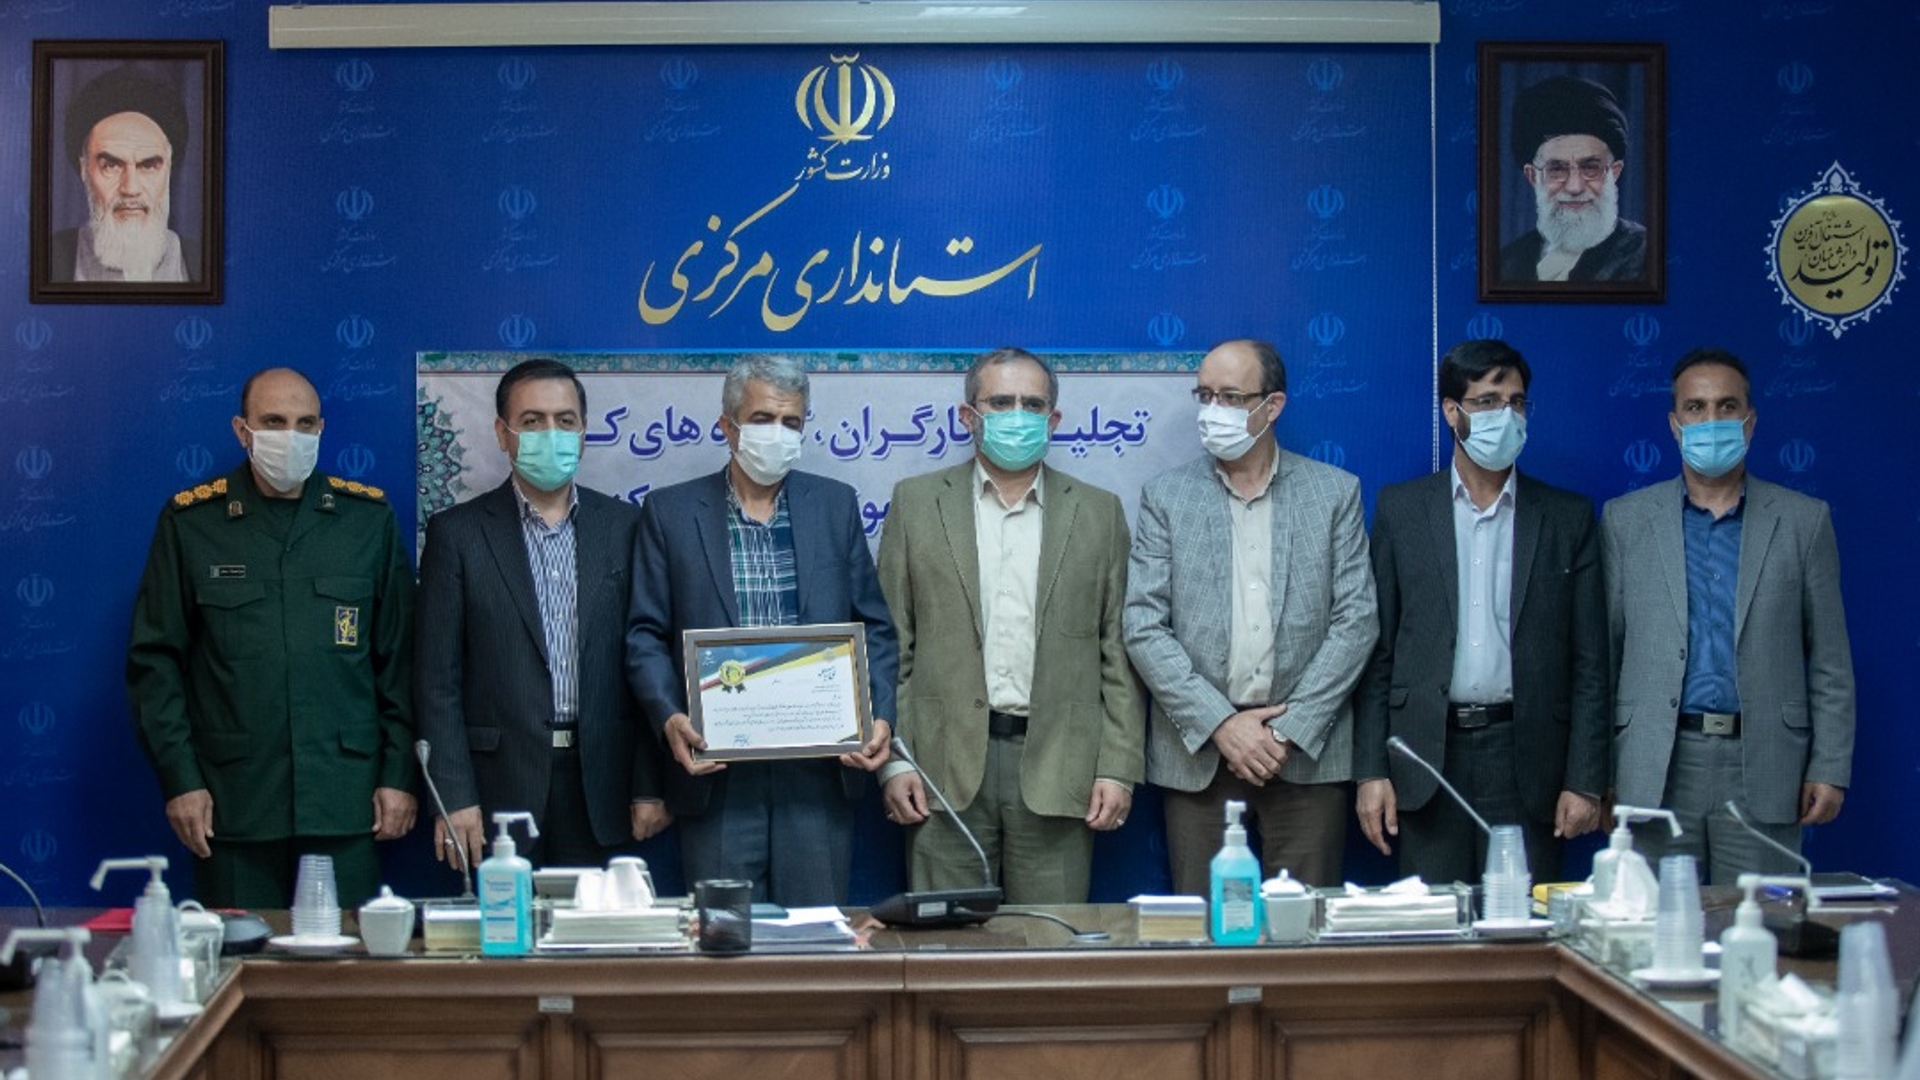 نشست صمیمی استاندار مرکزی با تشکل های کارگری و کارفرمایی به مناسبت هفته جهانی کار و کارگر